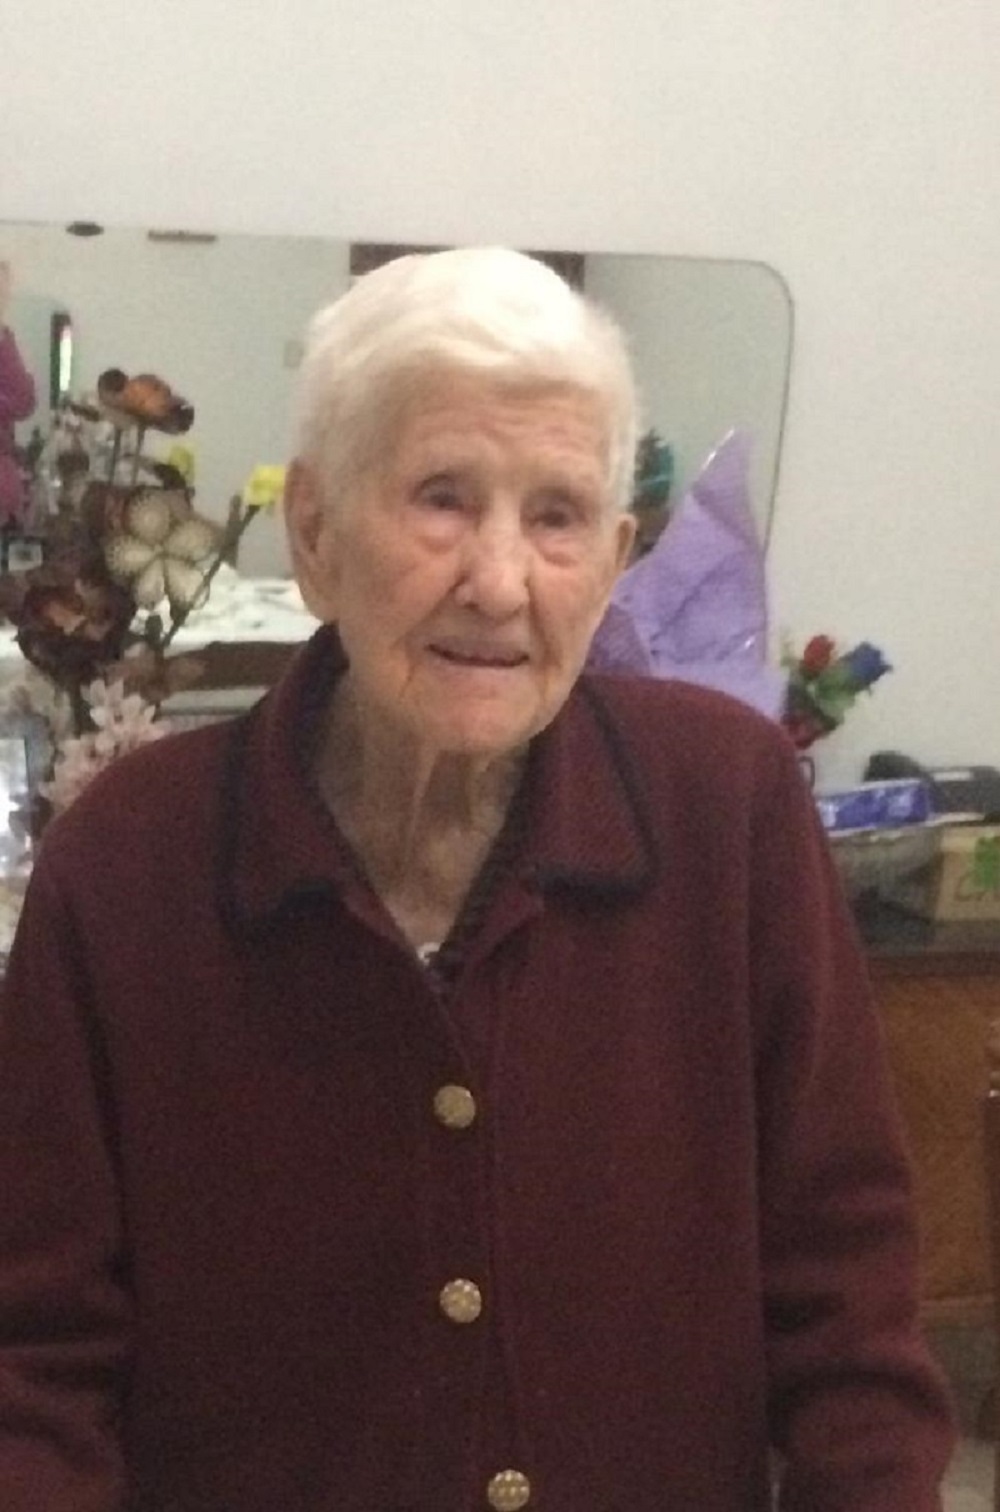 San Salvatore Telesino in festa per 104 anni di nonna Marietta